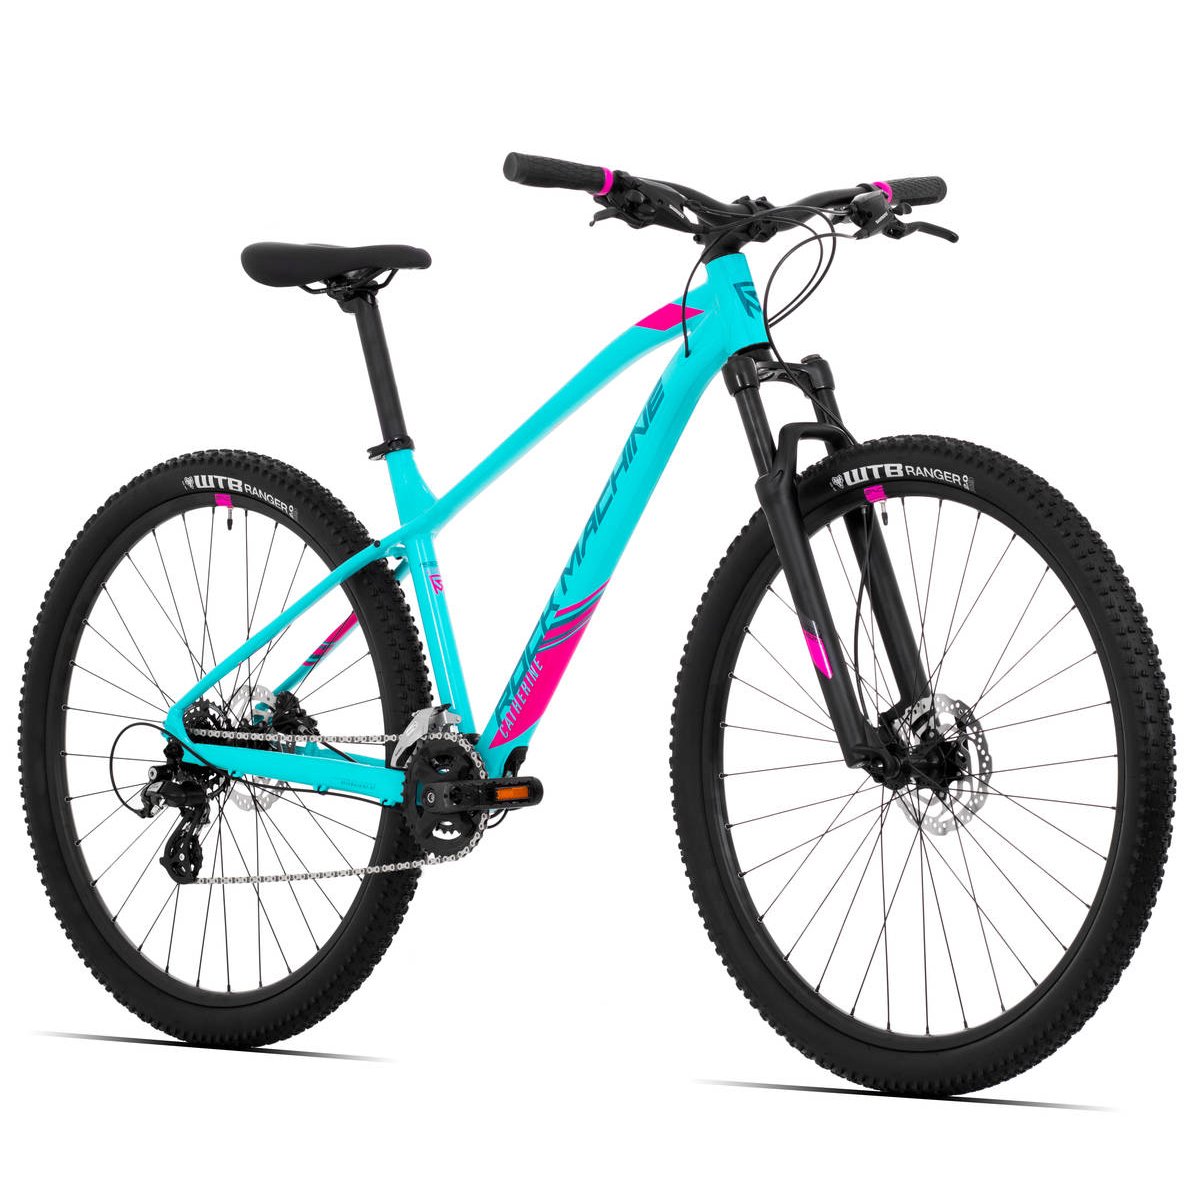 Kalnų dviratis Rock Machine 29 Catherine 10-29 šviesiai mėlynas/rožinis (L) - 8